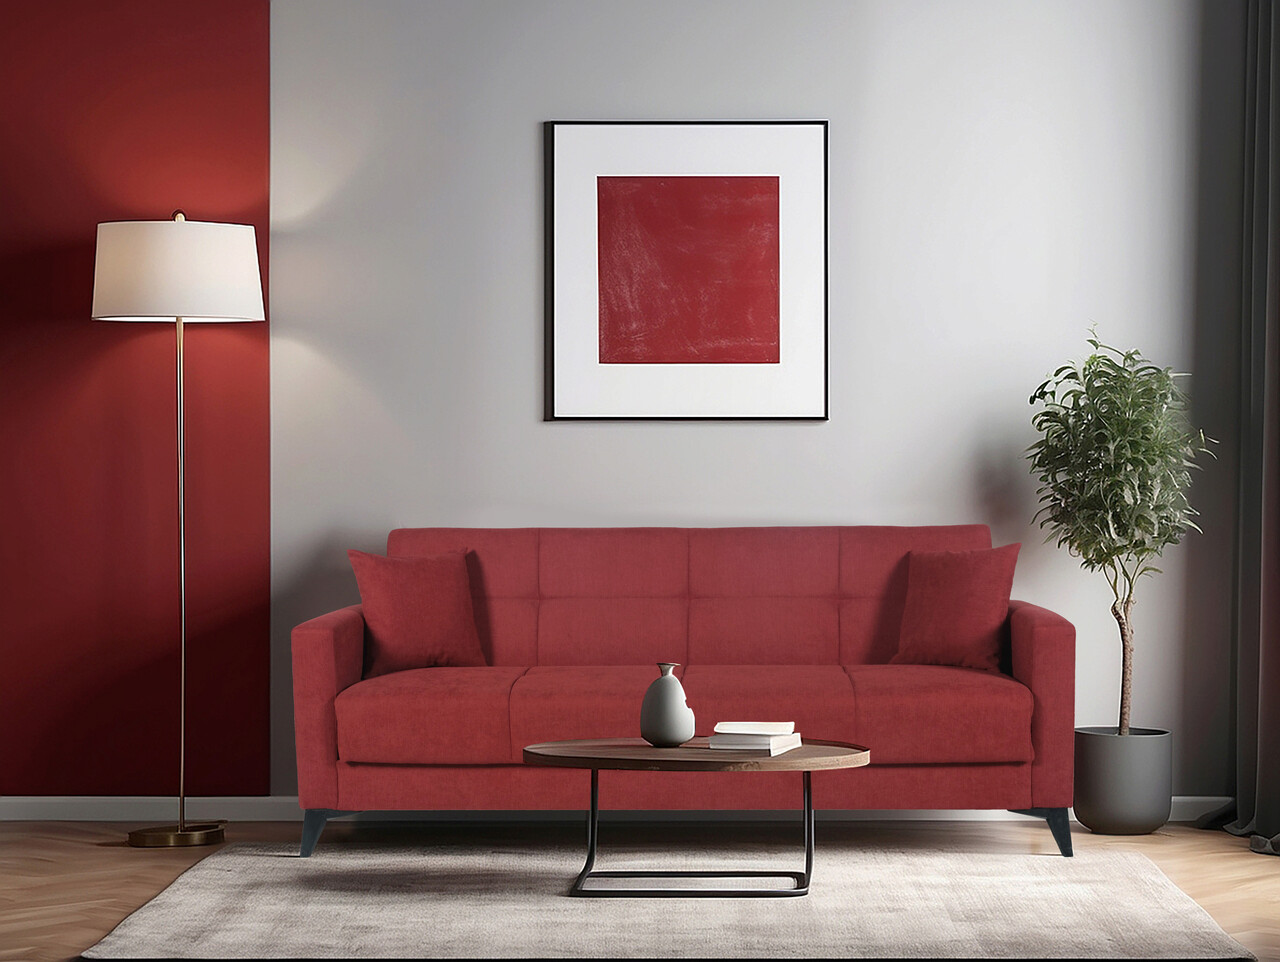 Bedora fabio kihúzható kanapé, 3 személyes, 215x82x92 cm, piros